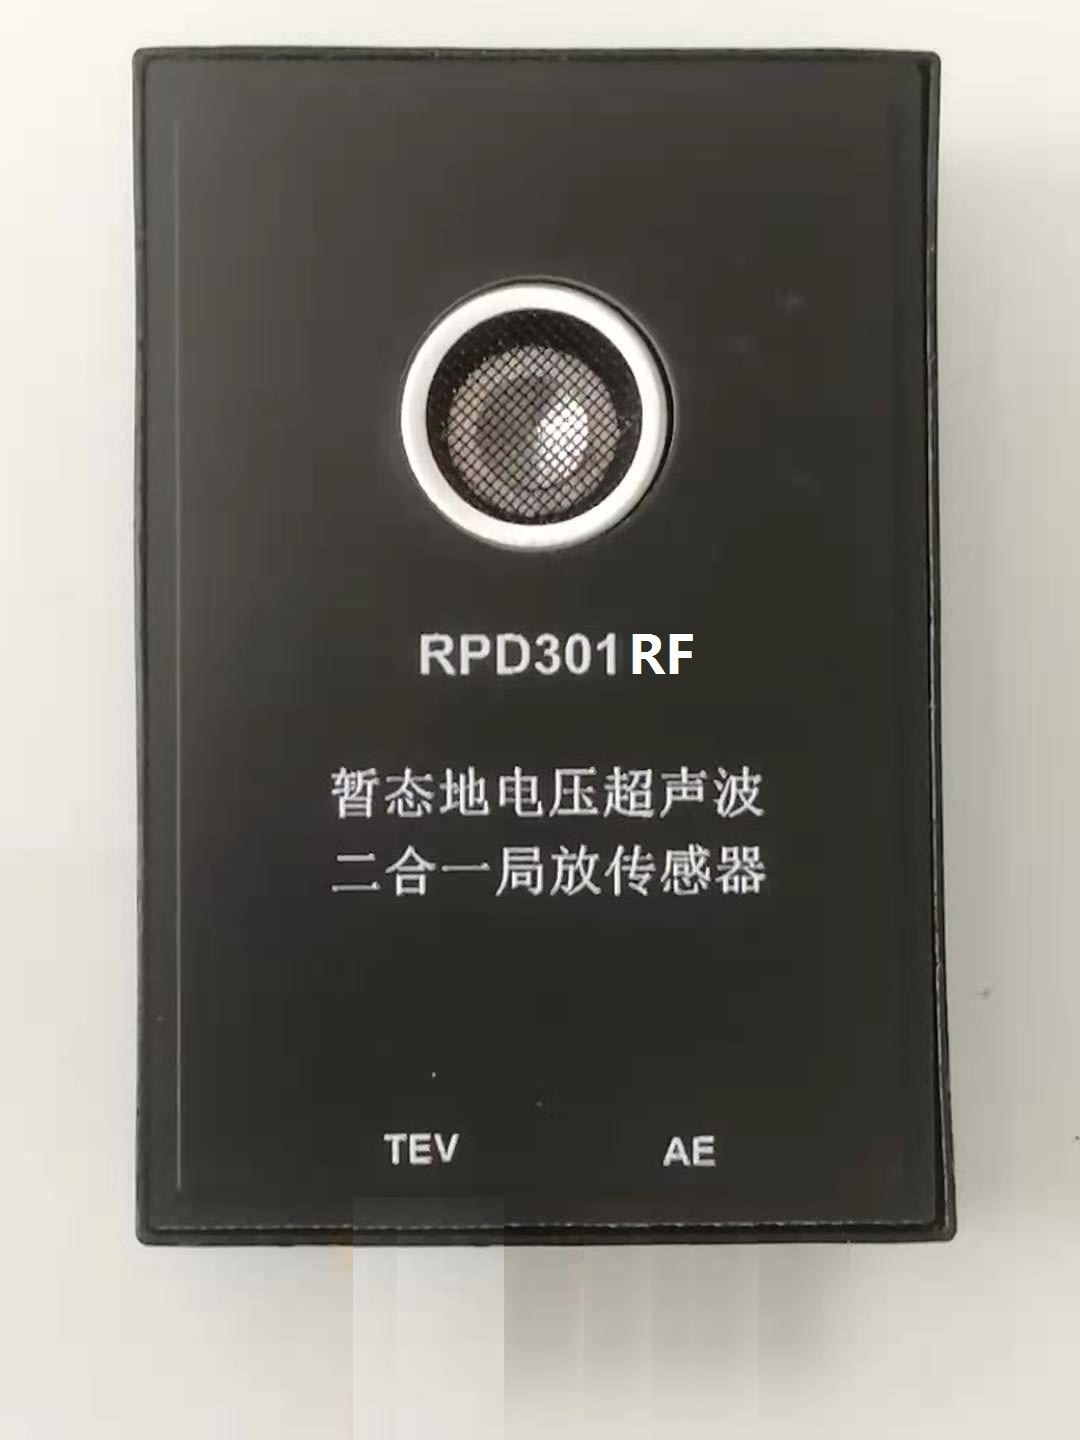 RPD301RF暂态地电压超声波二合一局放传感器.jpg